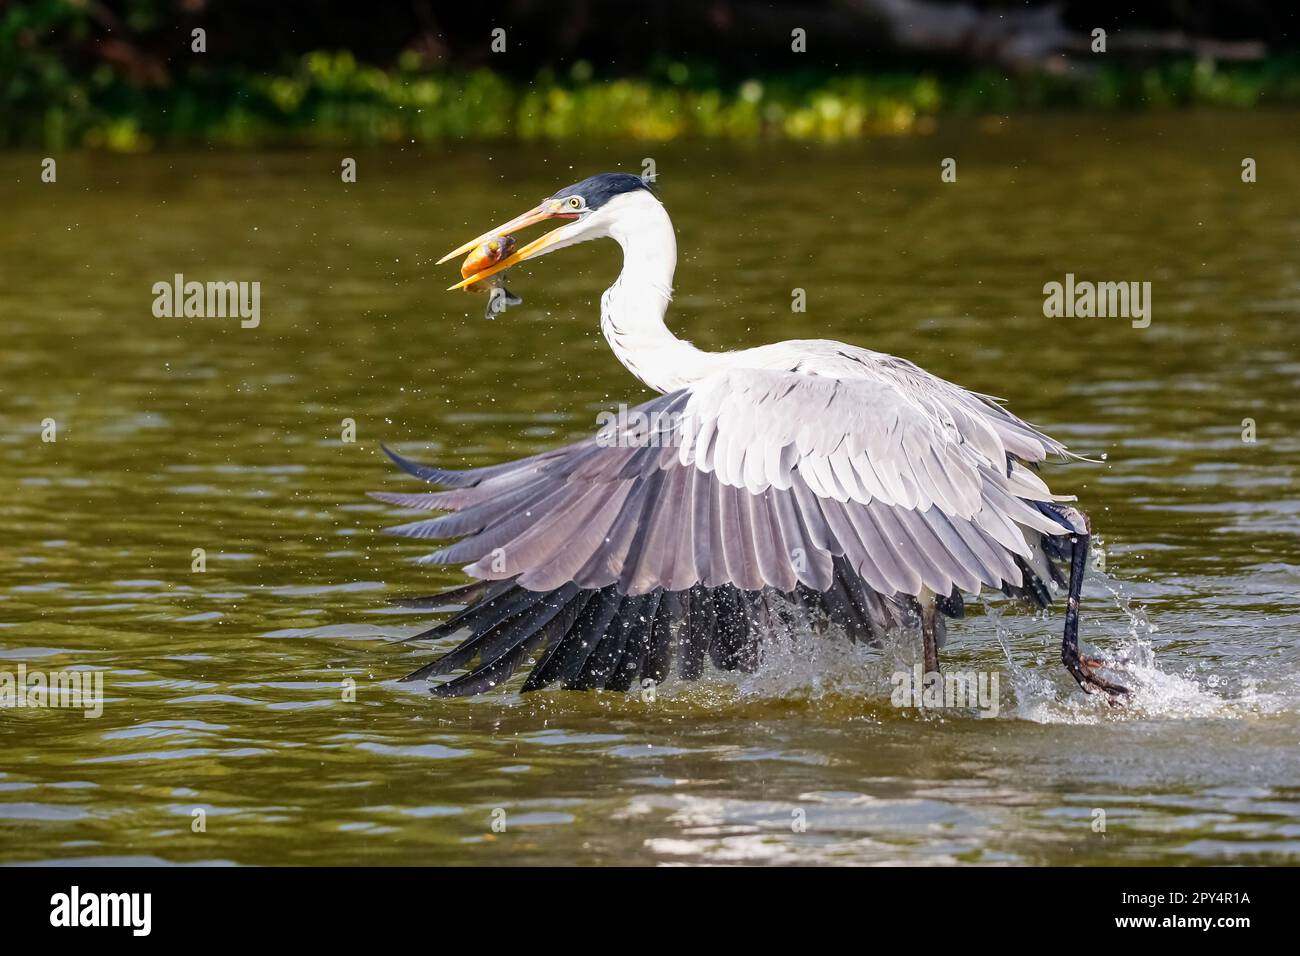 Cocoi Heron cattura un Pirhana in volo sulla superficie del fiume, Pantanal Wetlands, Mato Grosso, Brasile Foto Stock